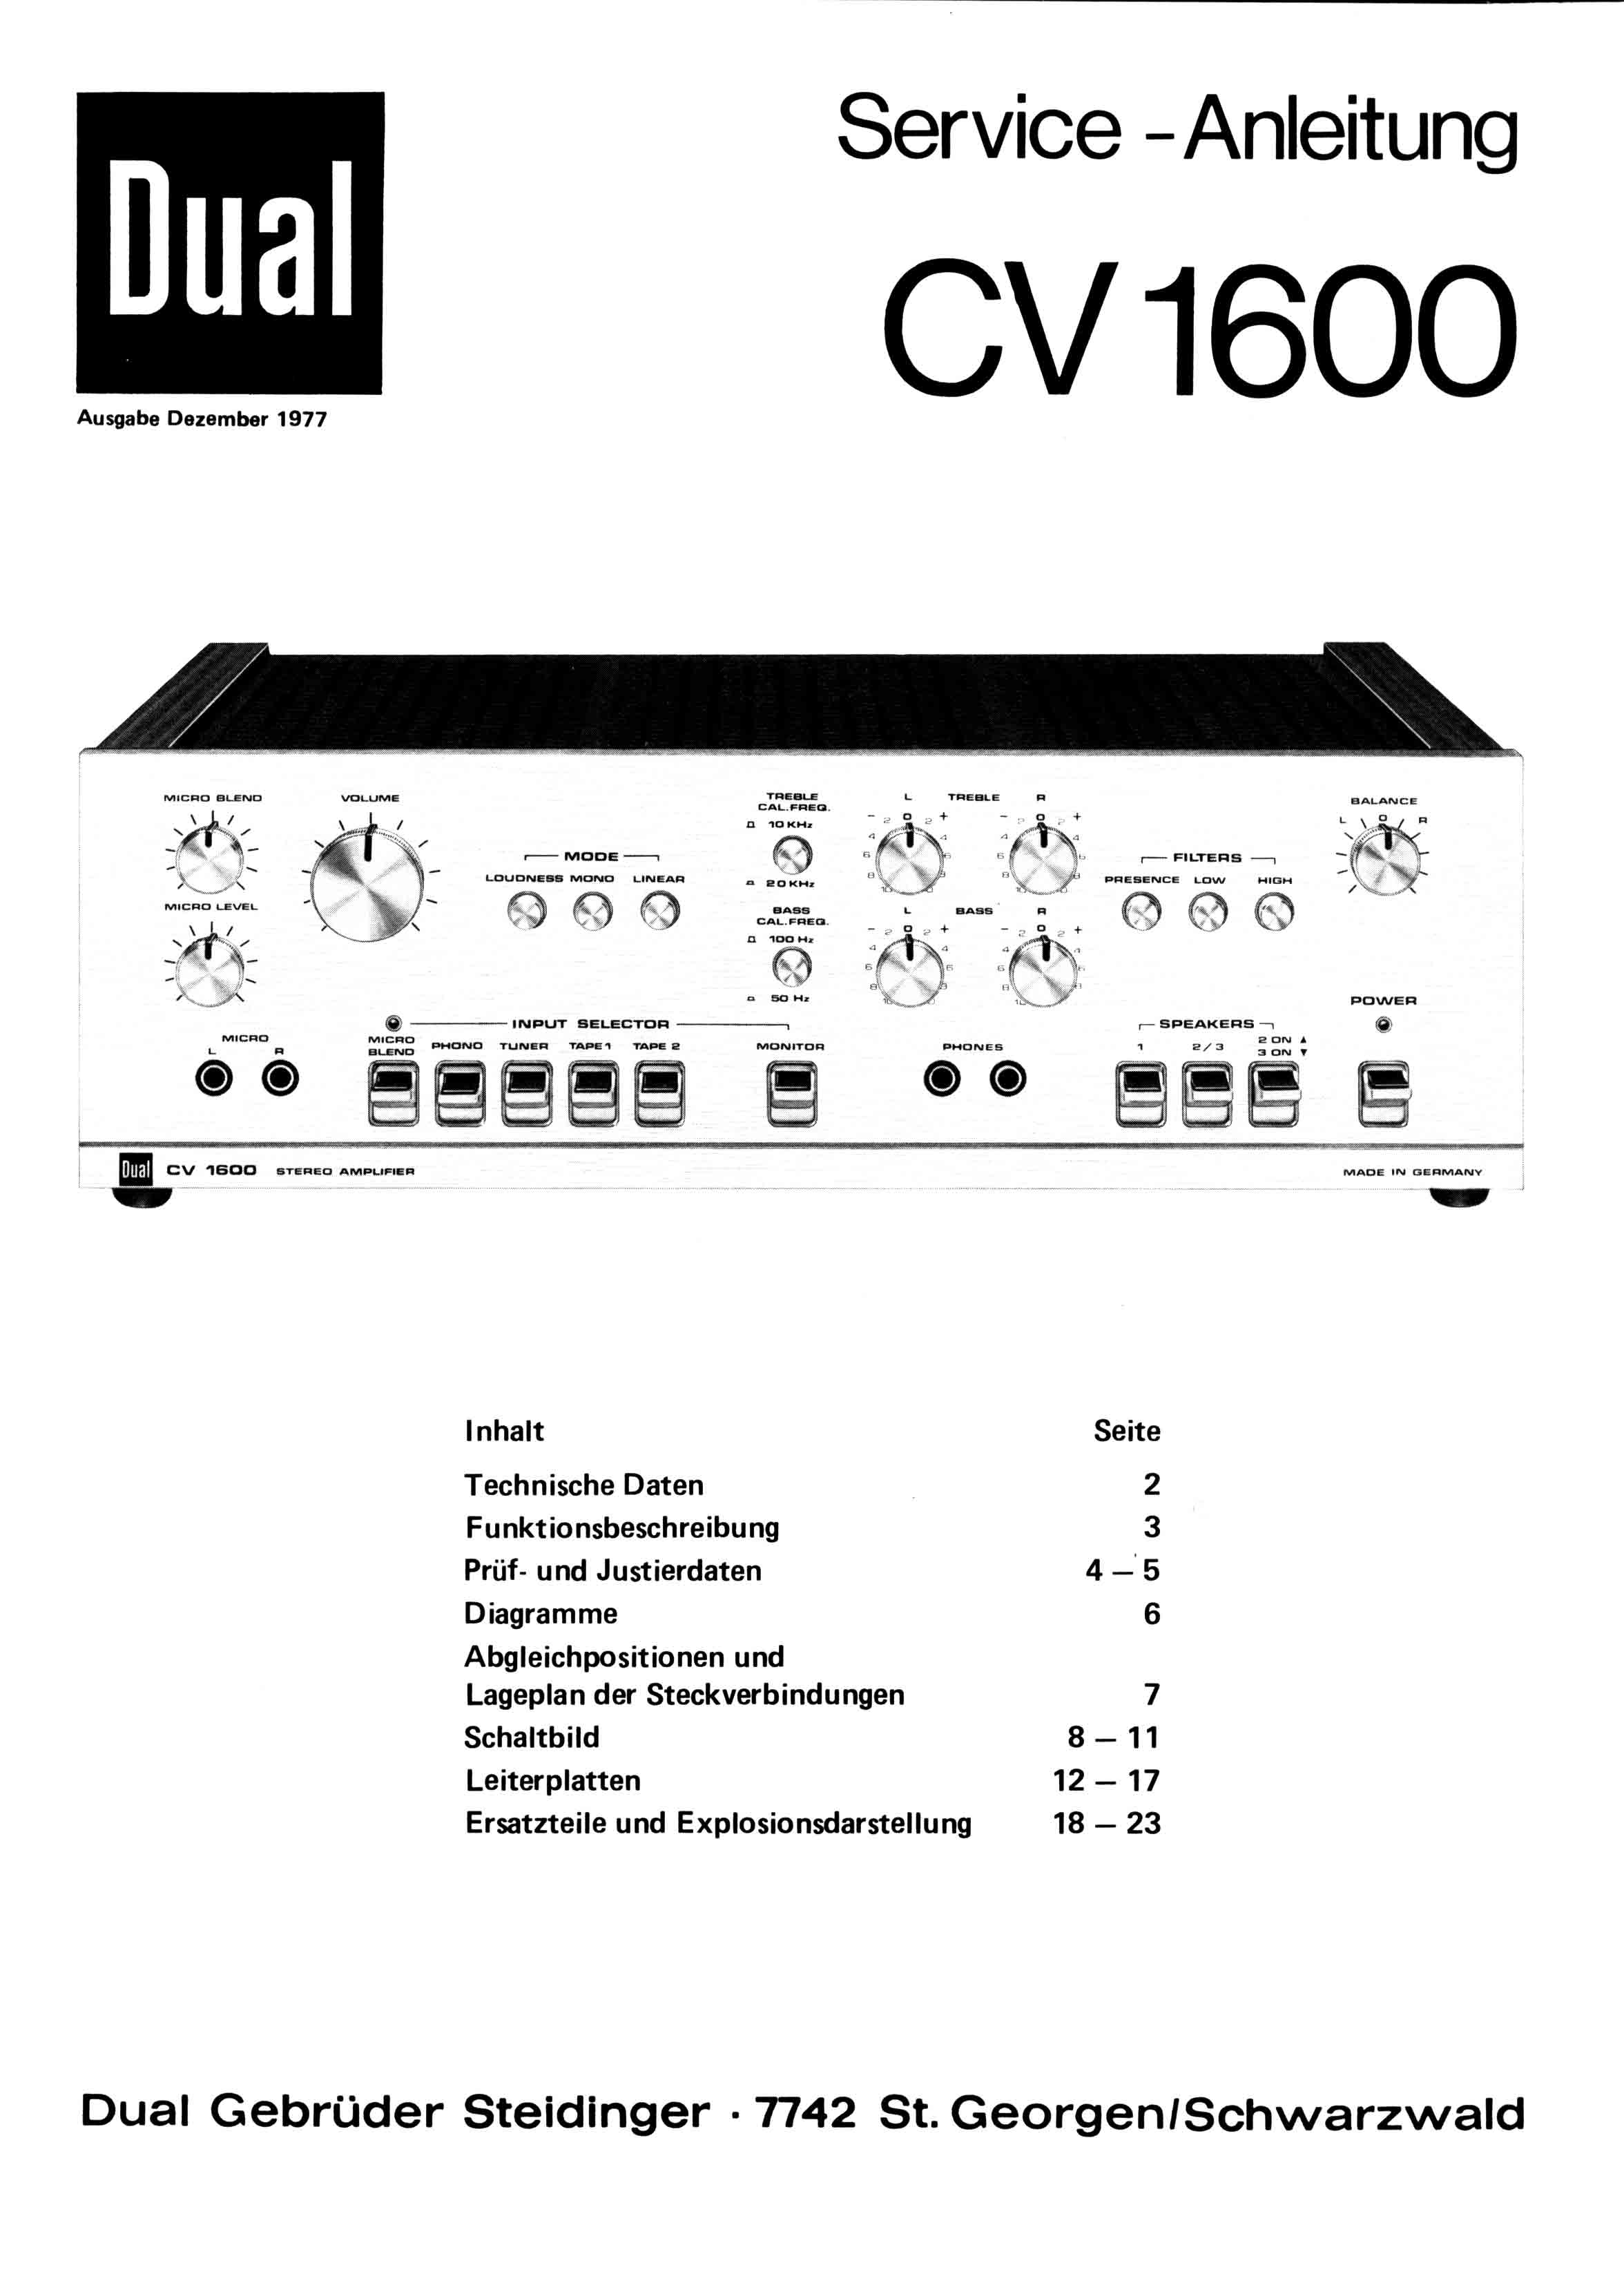 cv1600s-01.jpg